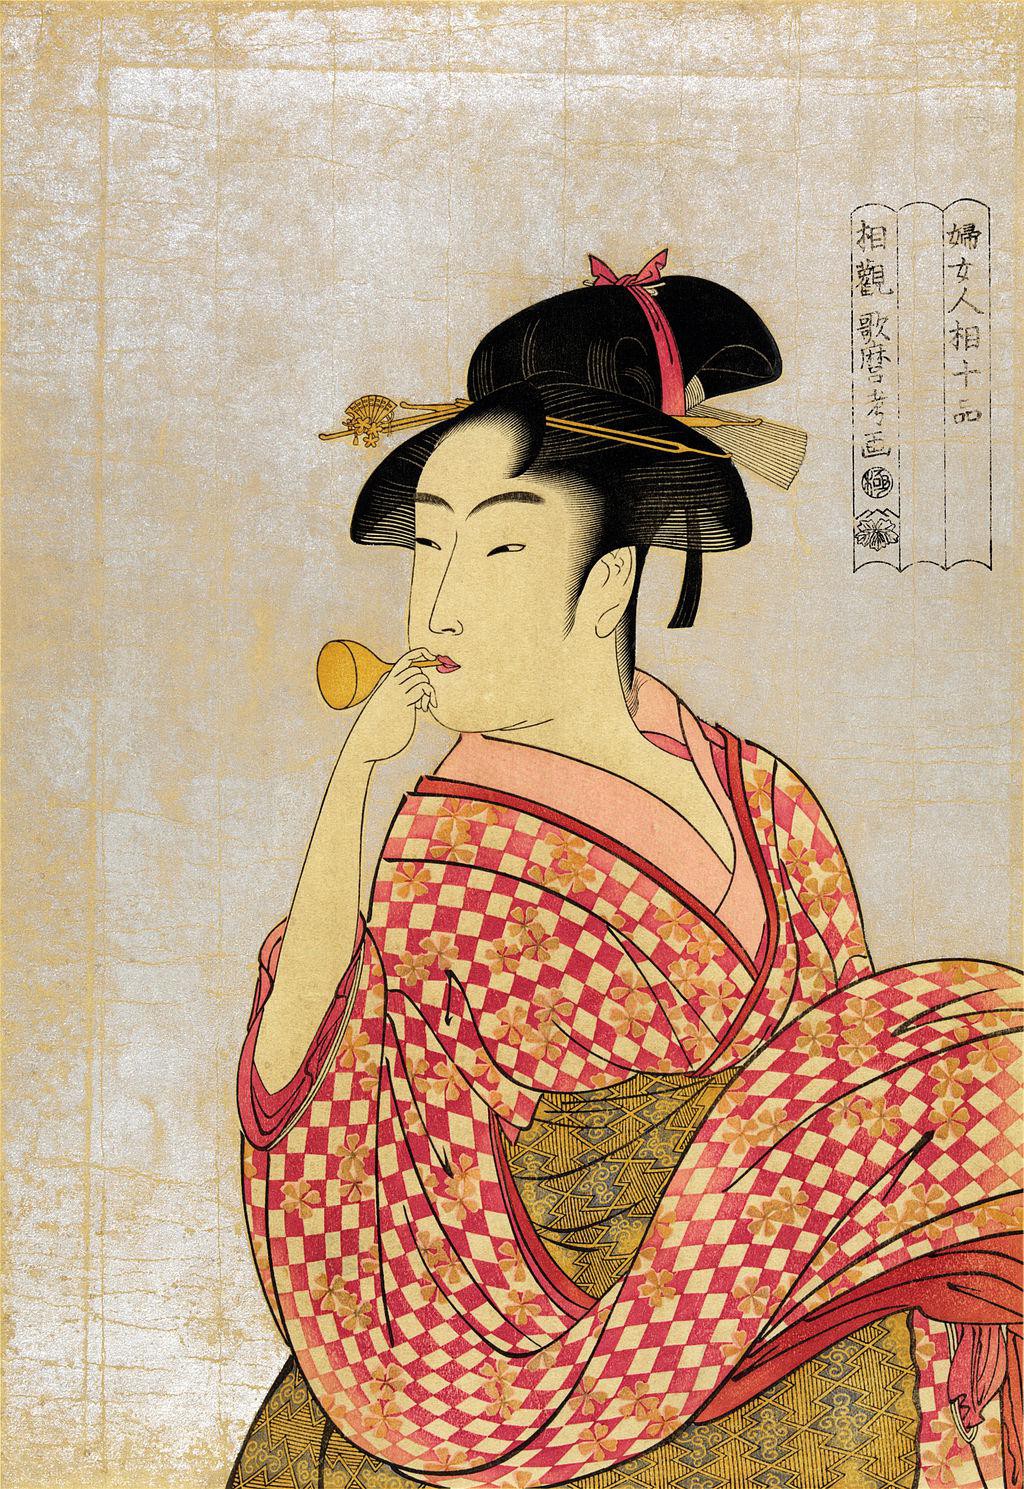 喜多川歌麿作「ビードロを吹く娘」。瓜実顔の美人